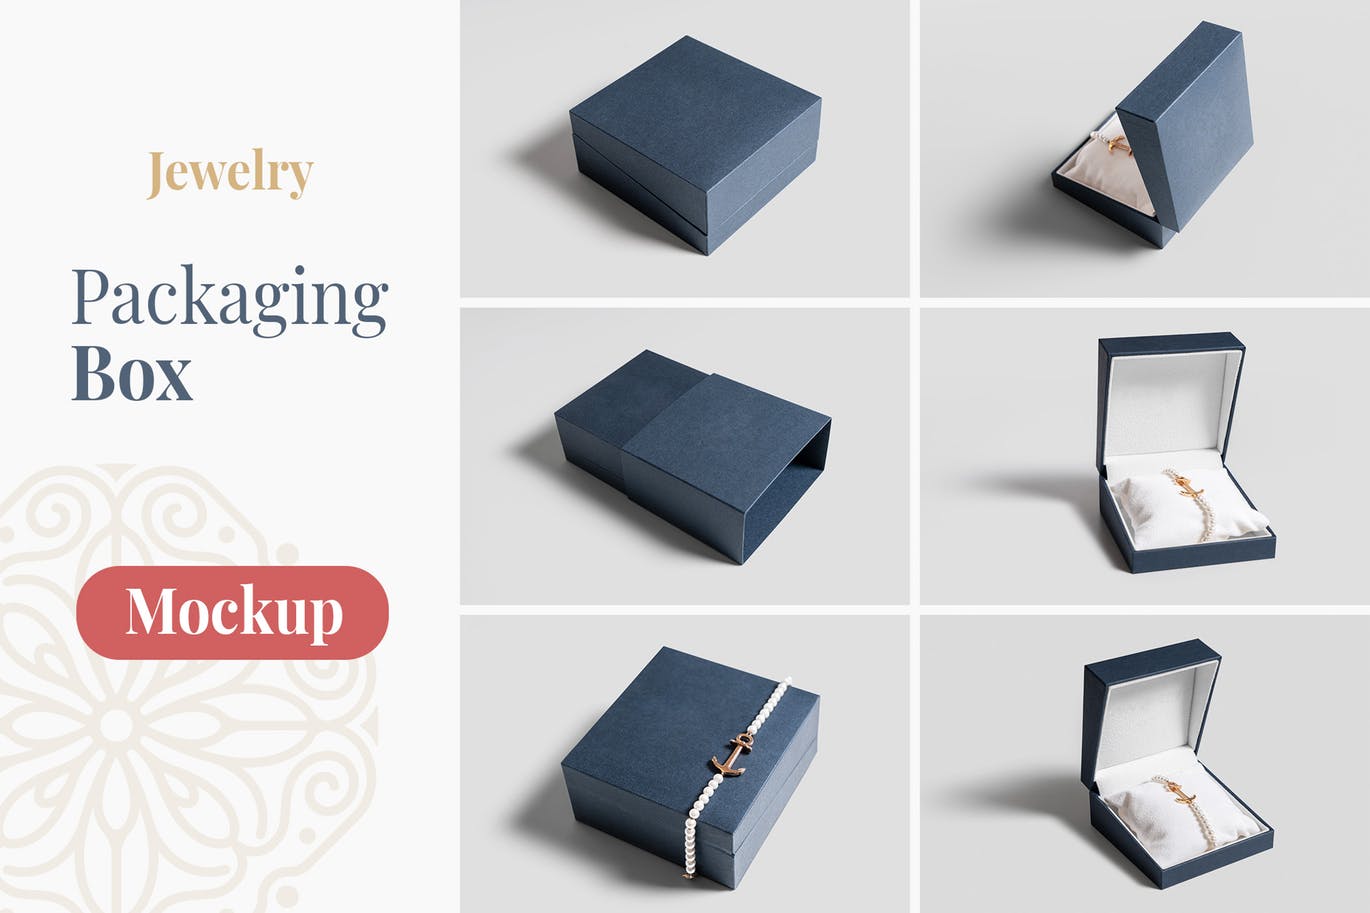 珠宝包装盒设计图大洋岛精选模板 Jewelry Packaging Box Mockups插图1